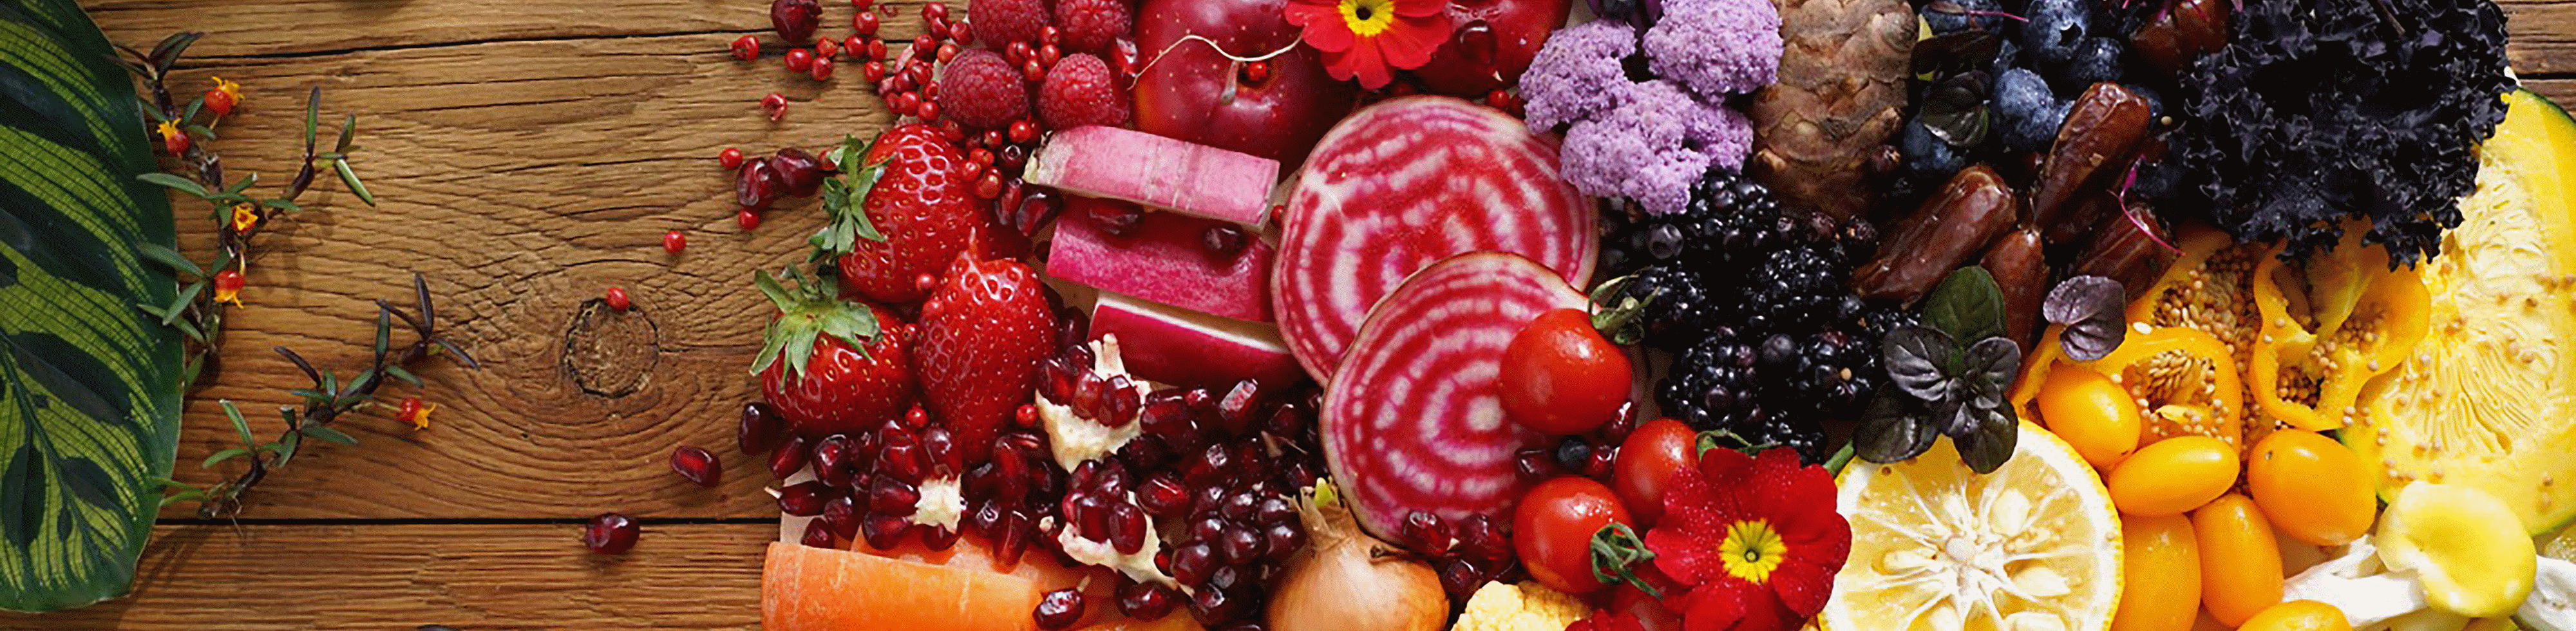 Bu lensle çekilmiş renkli sebze ve meyvelerin her köşede yüksek çözünürlüklü görüntüsü